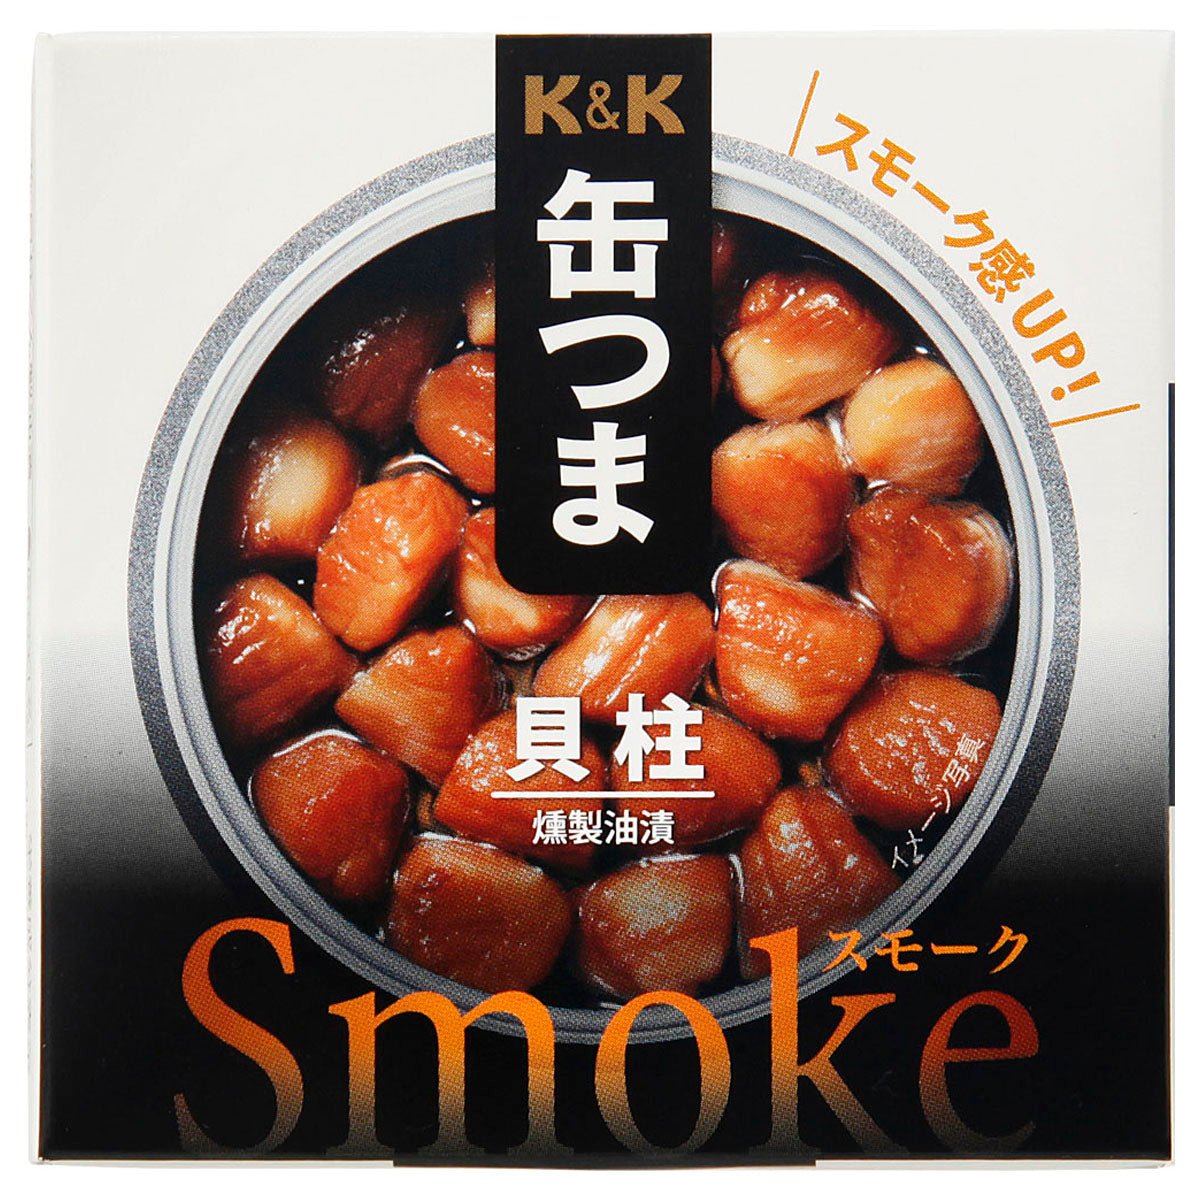 K&K Can Tsuma Smoke Shellchish